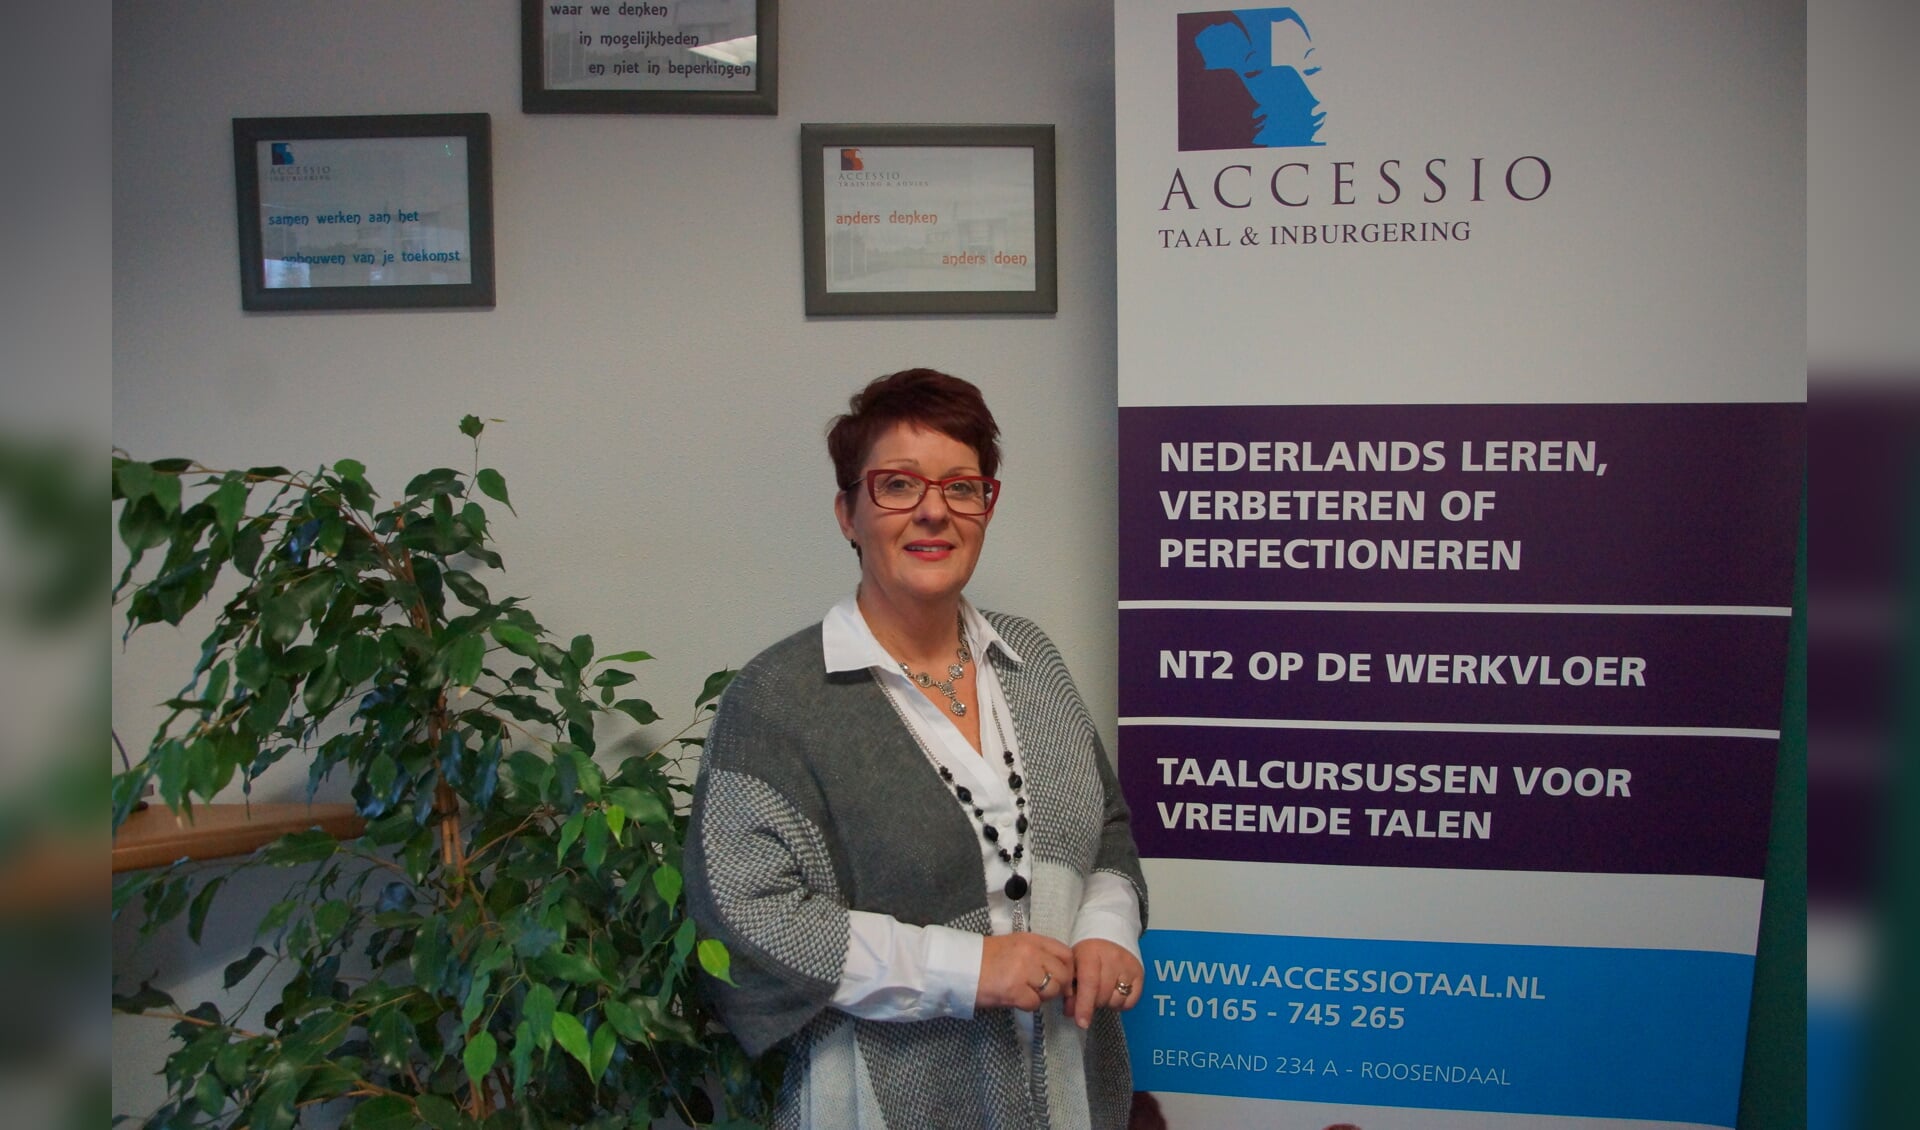 Mevrouw Marie-Jos Baselier, manager van Accessio Taal & Inburgering, bij een van de banners van het bedrijf. FOTO RENÉ BRUIJNINCX